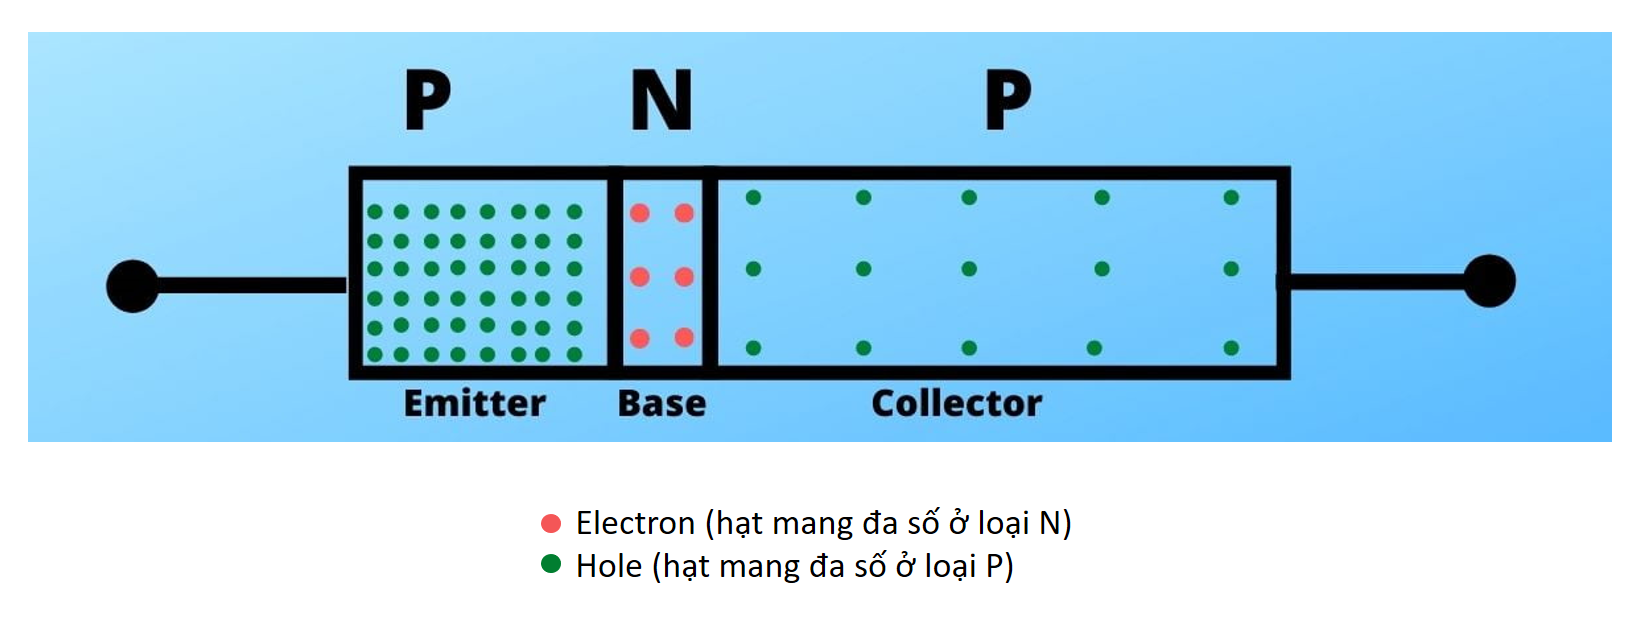 Ở đây loại N được kẹp giữa chất bán dẫn loại P. Vì vậy, nó là một PNP.